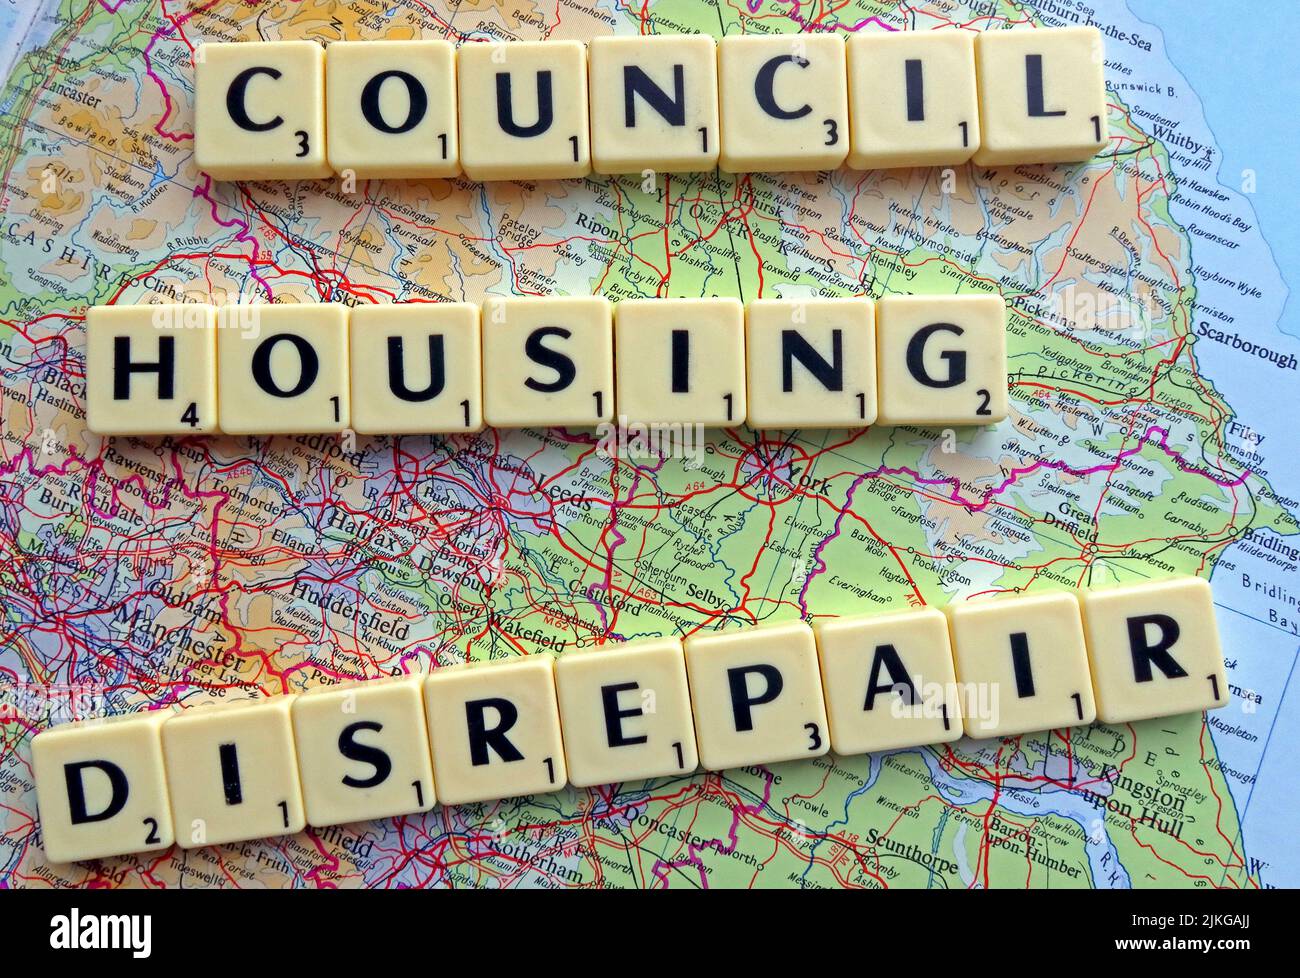 SocialHousing / Council Housing les problèmes de réparation avec des réparations réactives énoncées dans les lettres Scrabble sur une carte du nord de l'Angleterre et des Midlands Banque D'Images